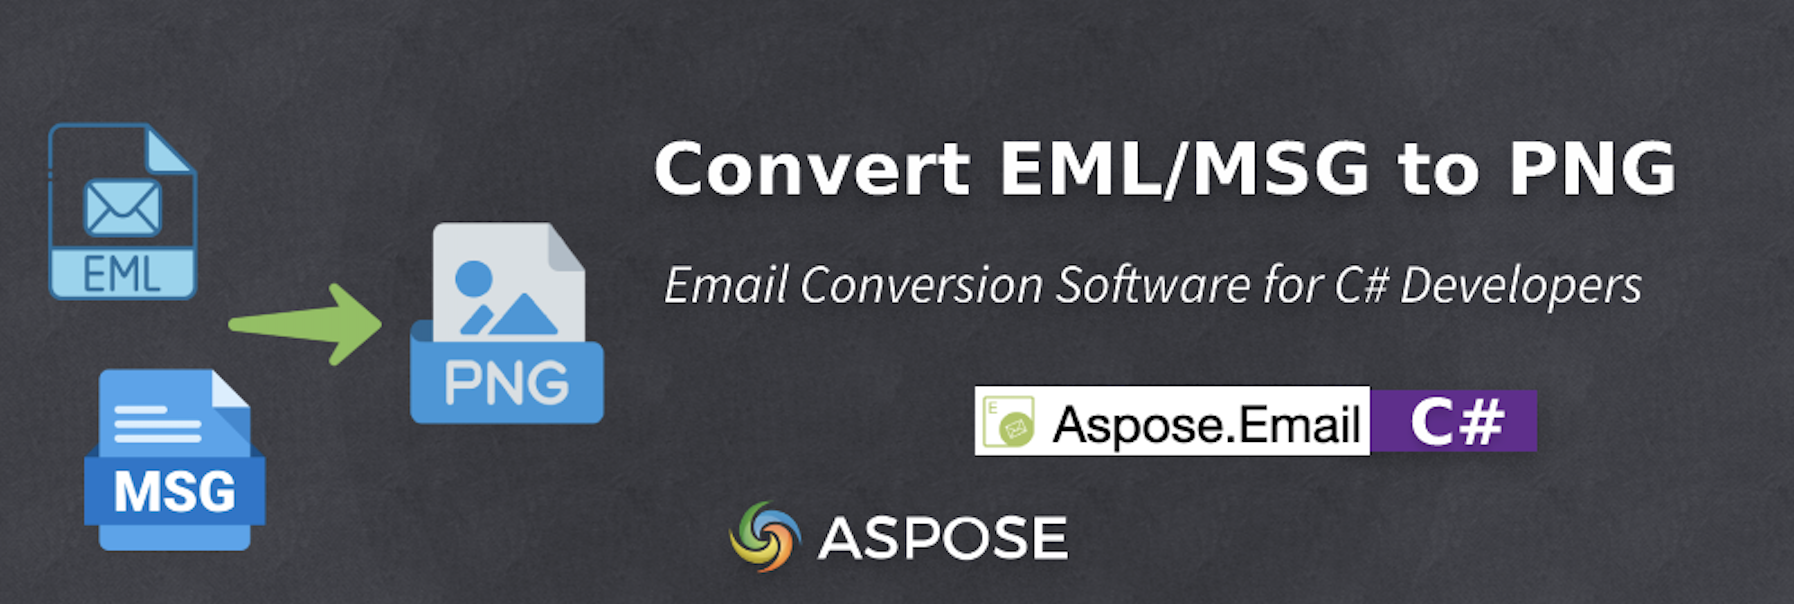 Logiciel de conversion d'e-mails pour les développeurs C# - EML vers PNG